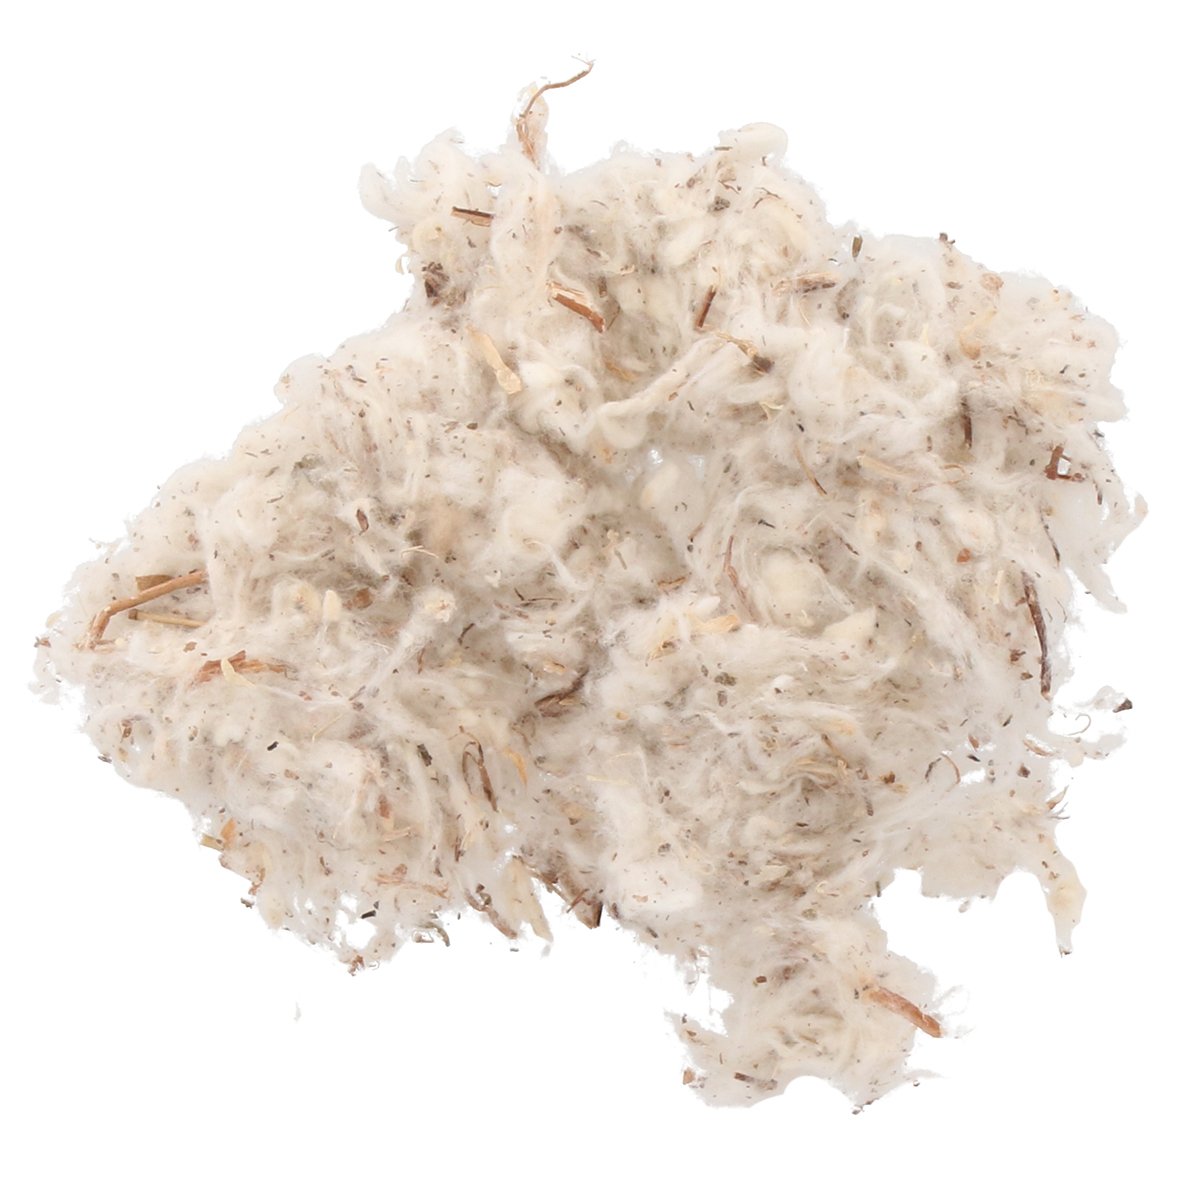 Bodembedekking Soft Cotton voor knaagdieren Quality Clean